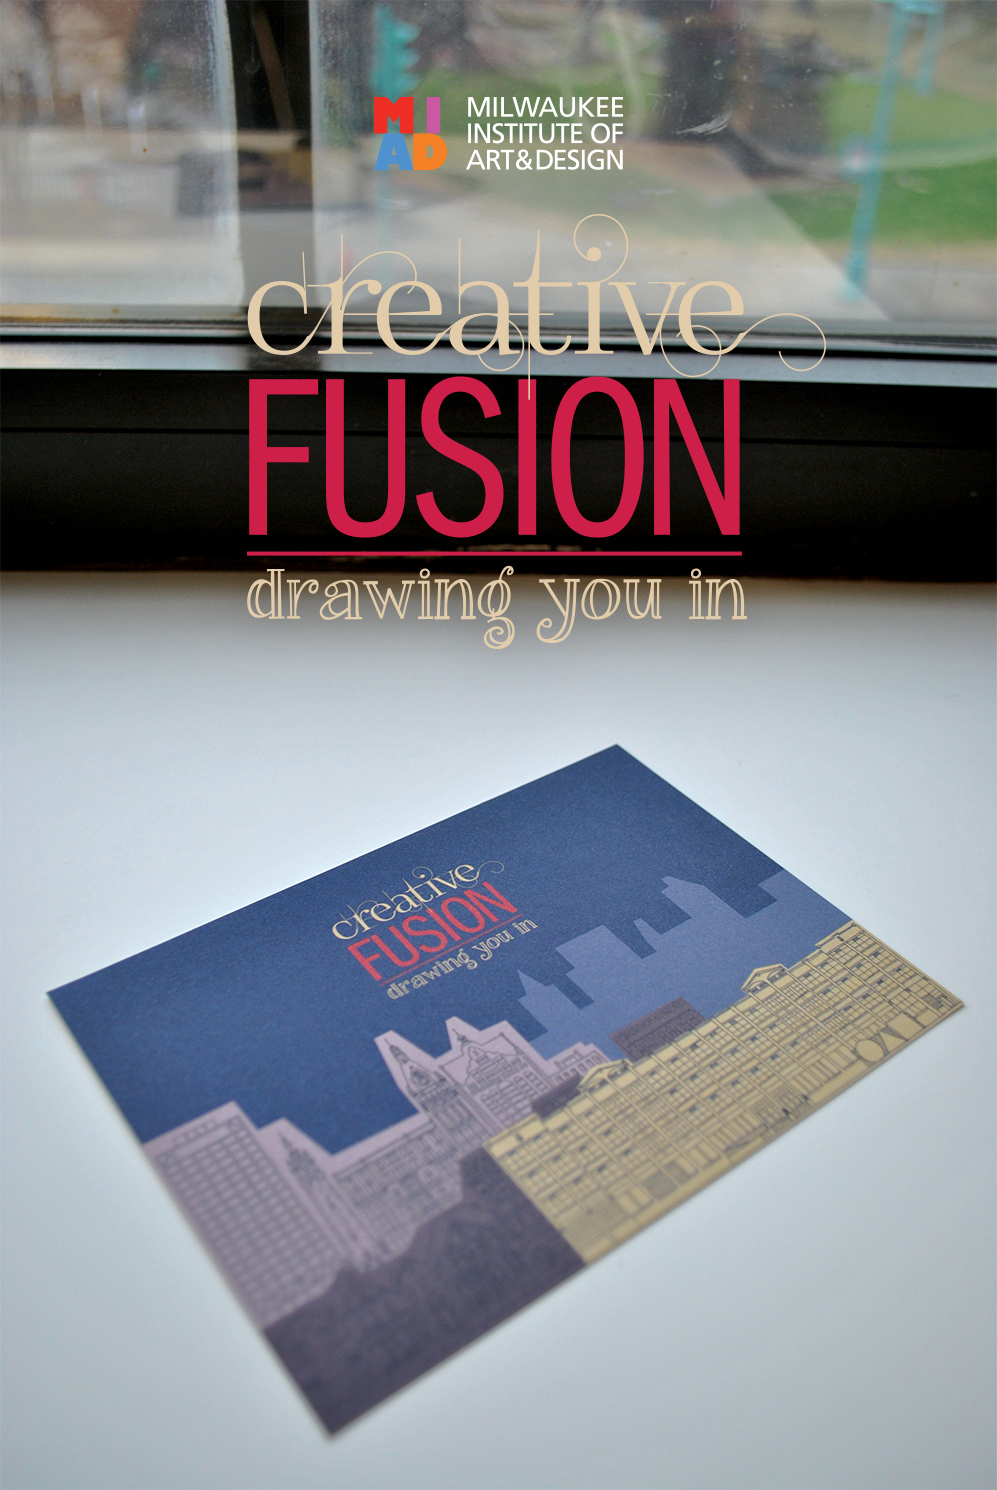 MIAD's Creative Fusion Invite